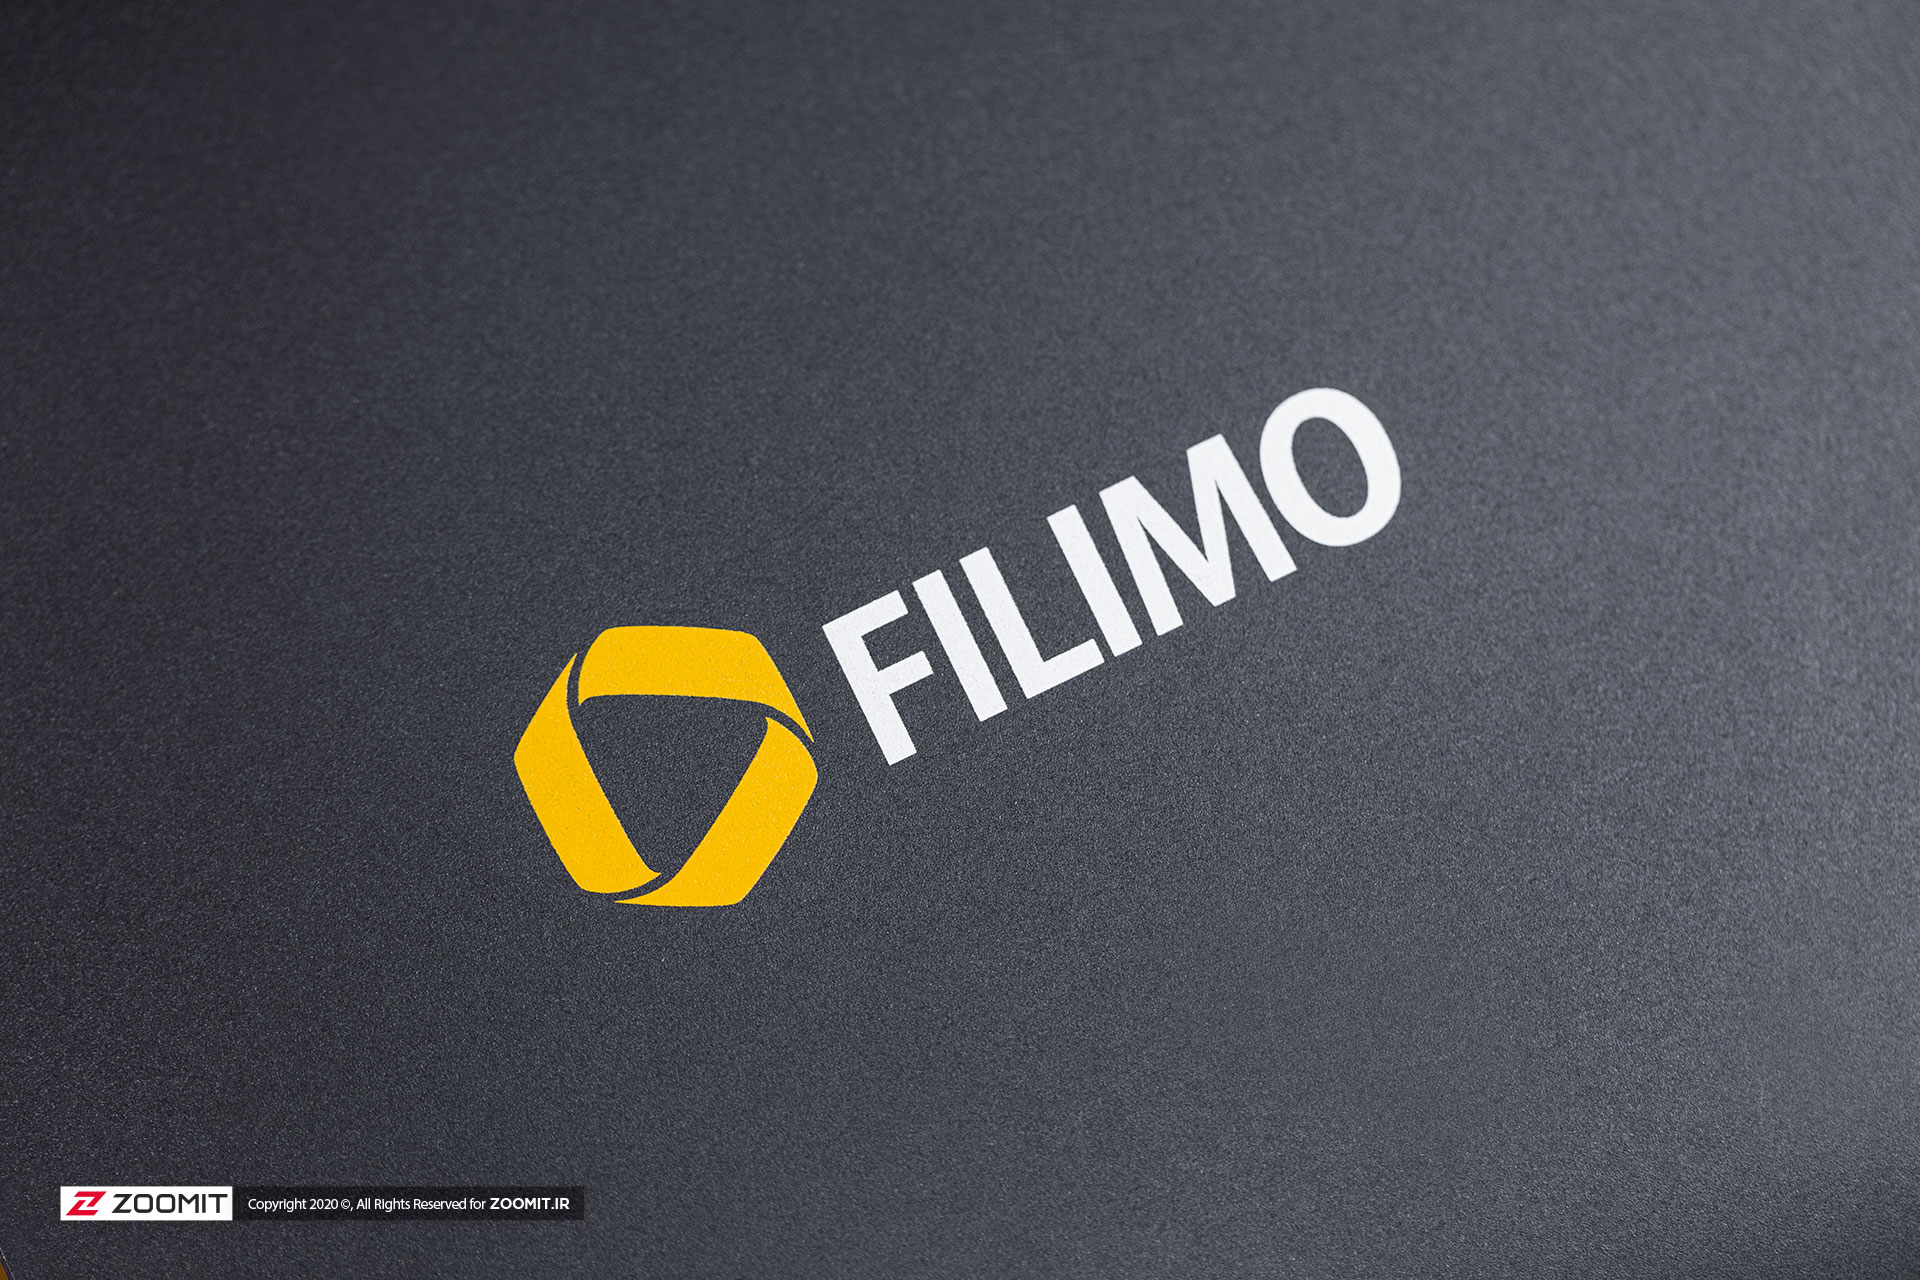 تصاویر بررسی فیلیمو باکس/Filimo Box